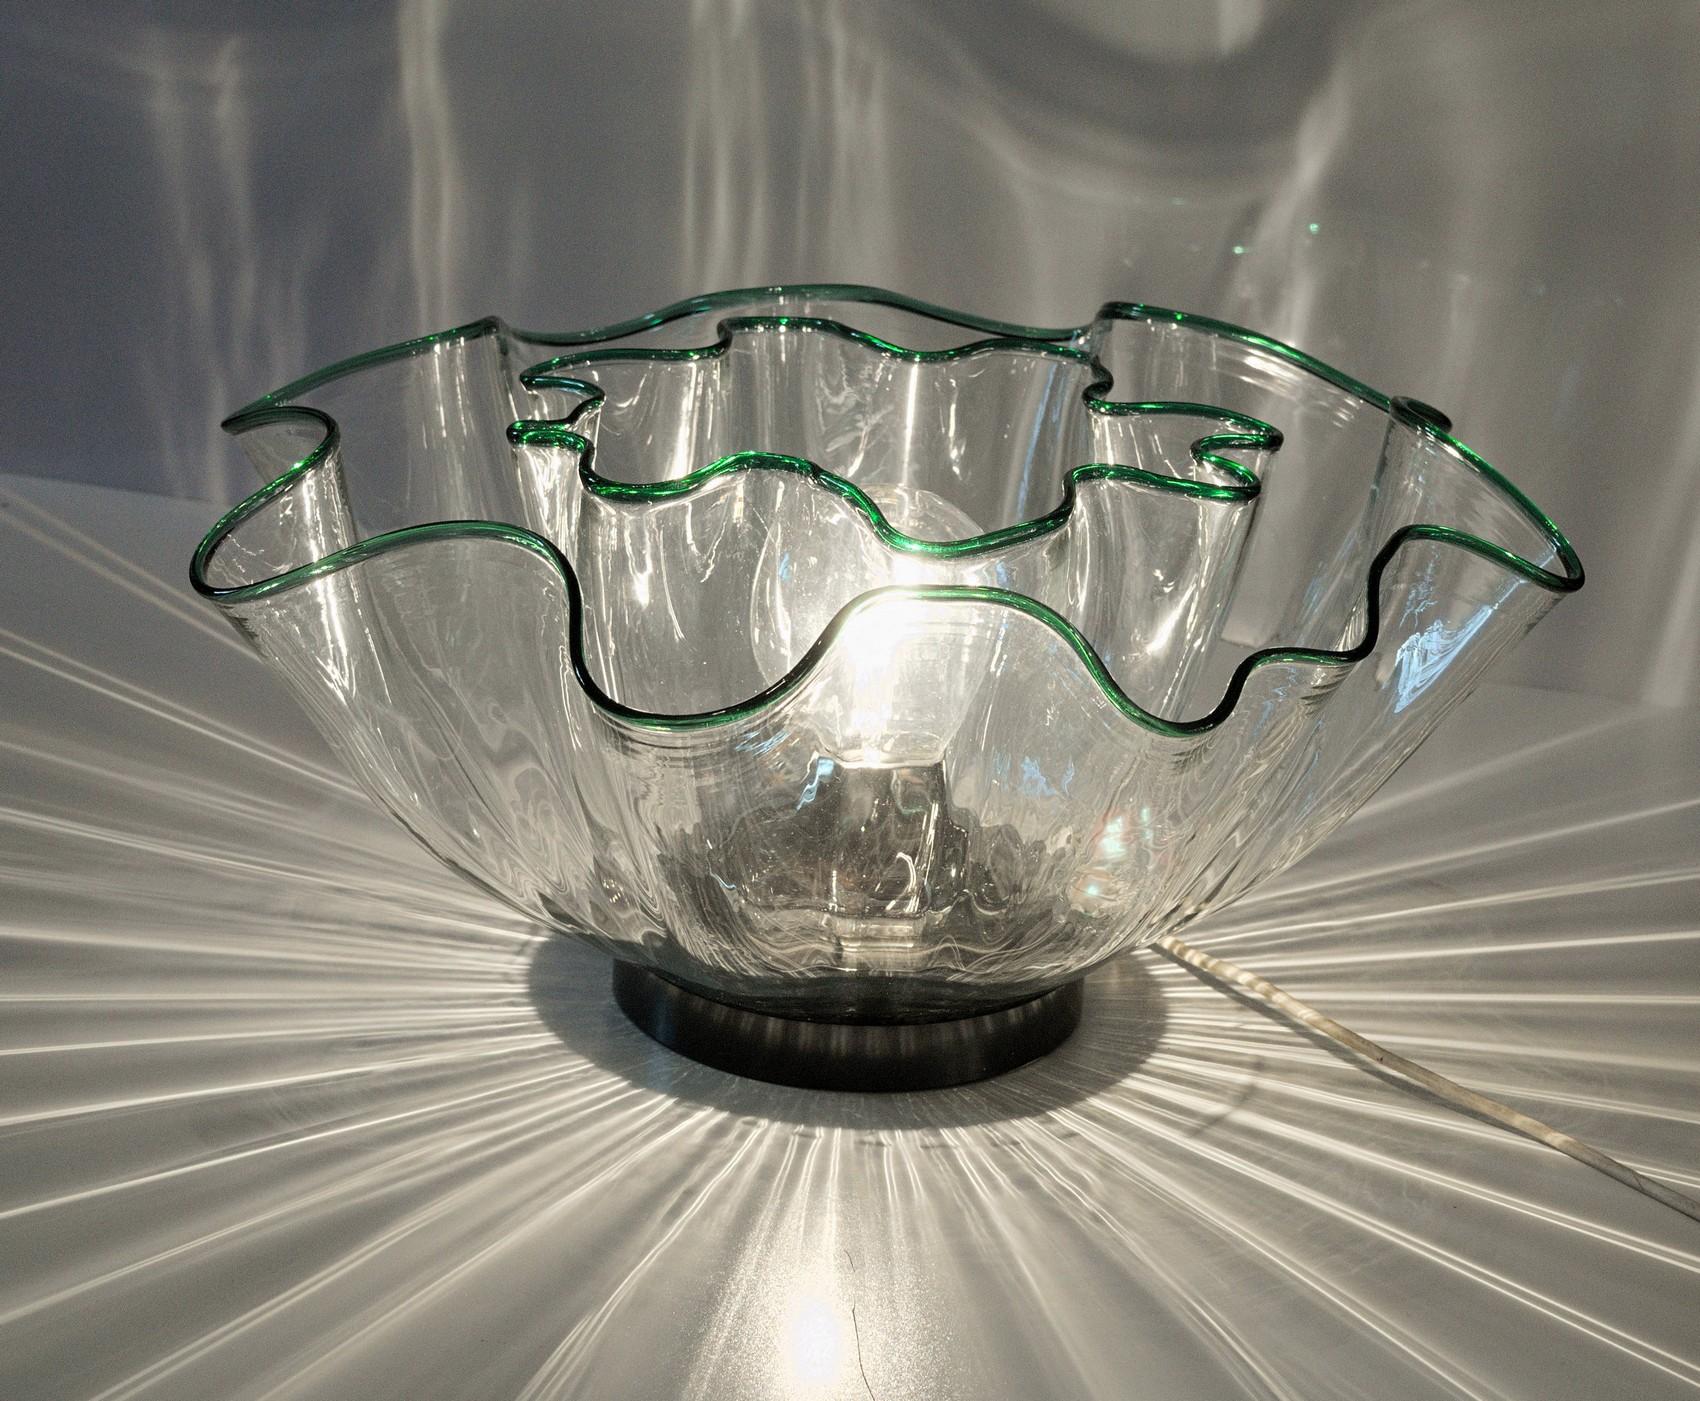 Schöne Lampe:: entworfen von Adalberto Lago und Stefania Giannotti für Vistosi. Hergestellt aus zwei ineinander geschachtelten Fazzoletto-Formen. 
Der grüne Rand wird durch das Licht hervorgehoben. Die beiden gewellten Formen erzeugen mit dem Licht